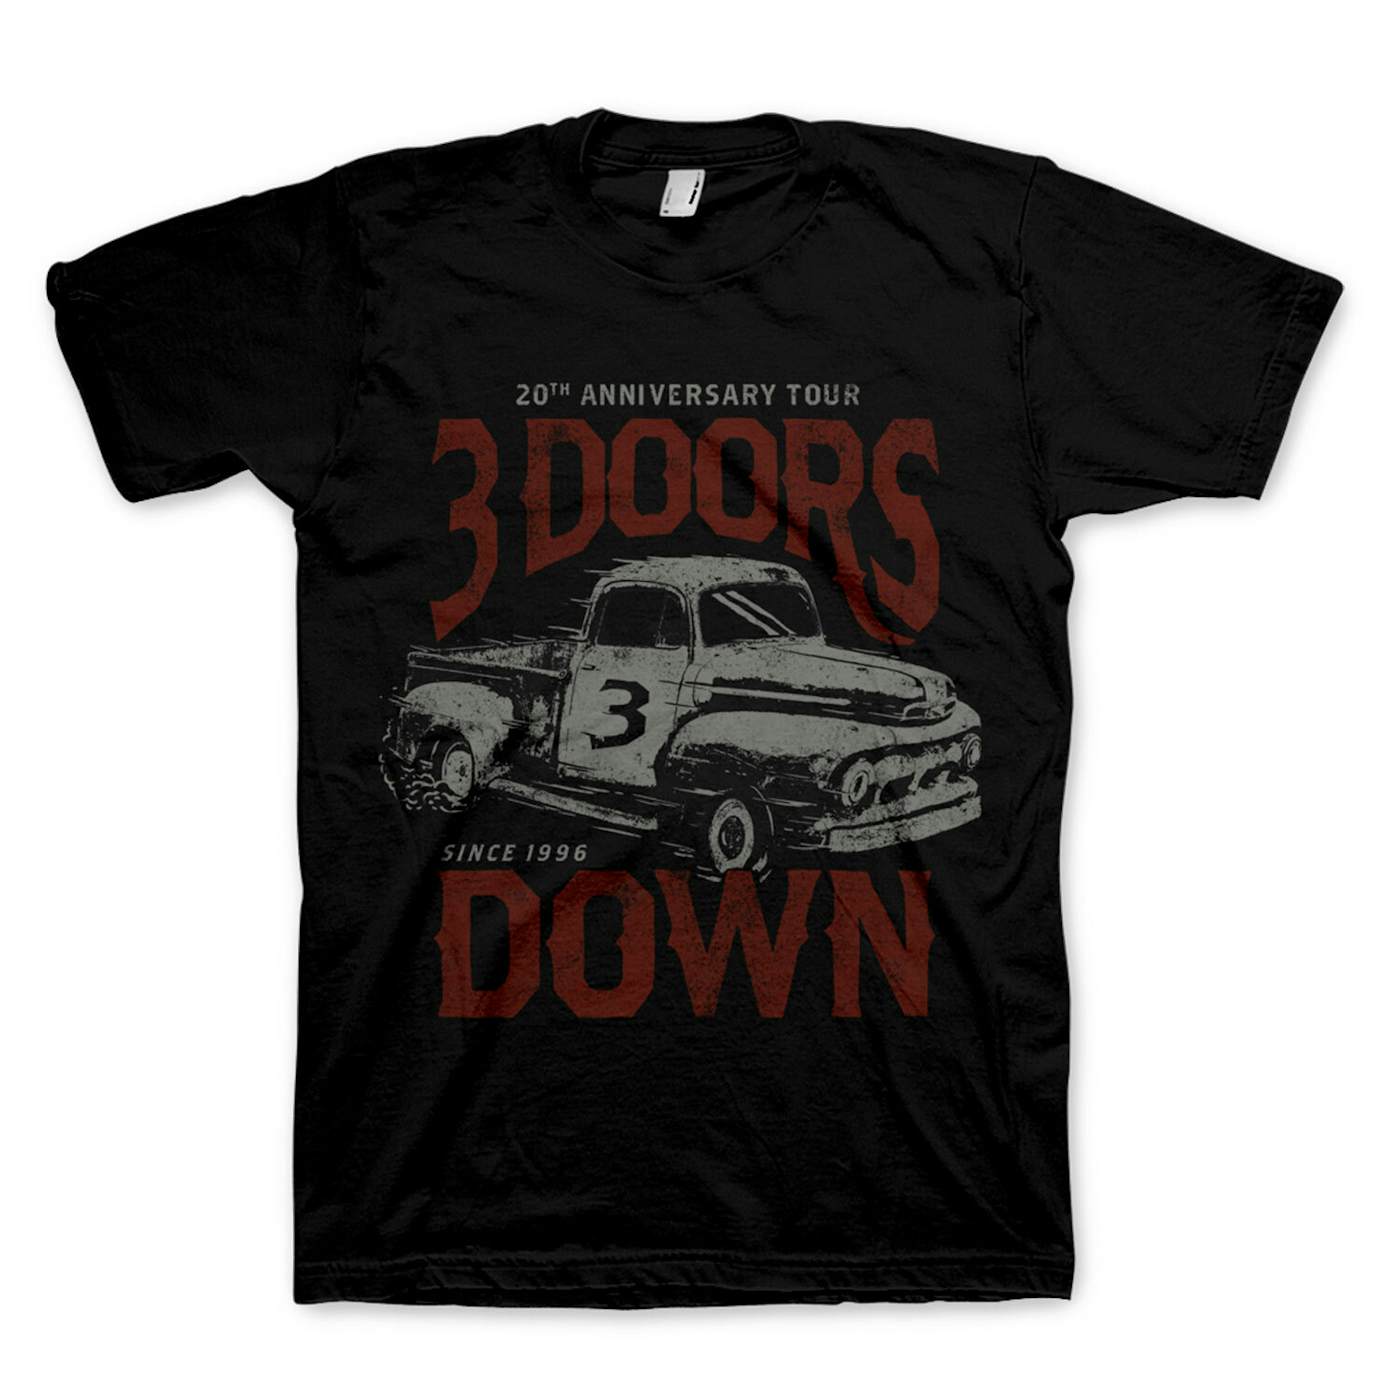 3 Doors Down Truck Tee